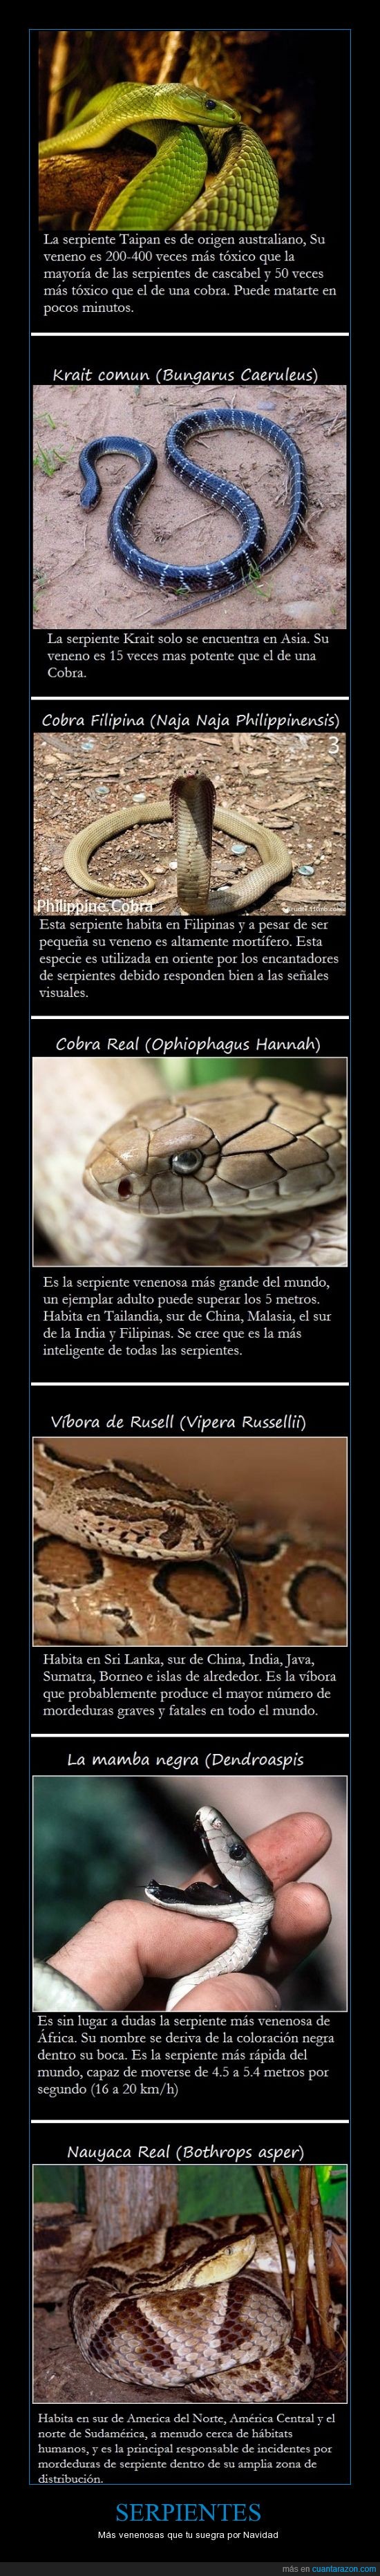 Serpientes,Taipan,Krait,Cobra,Rusell,Mamba,Nauyaca